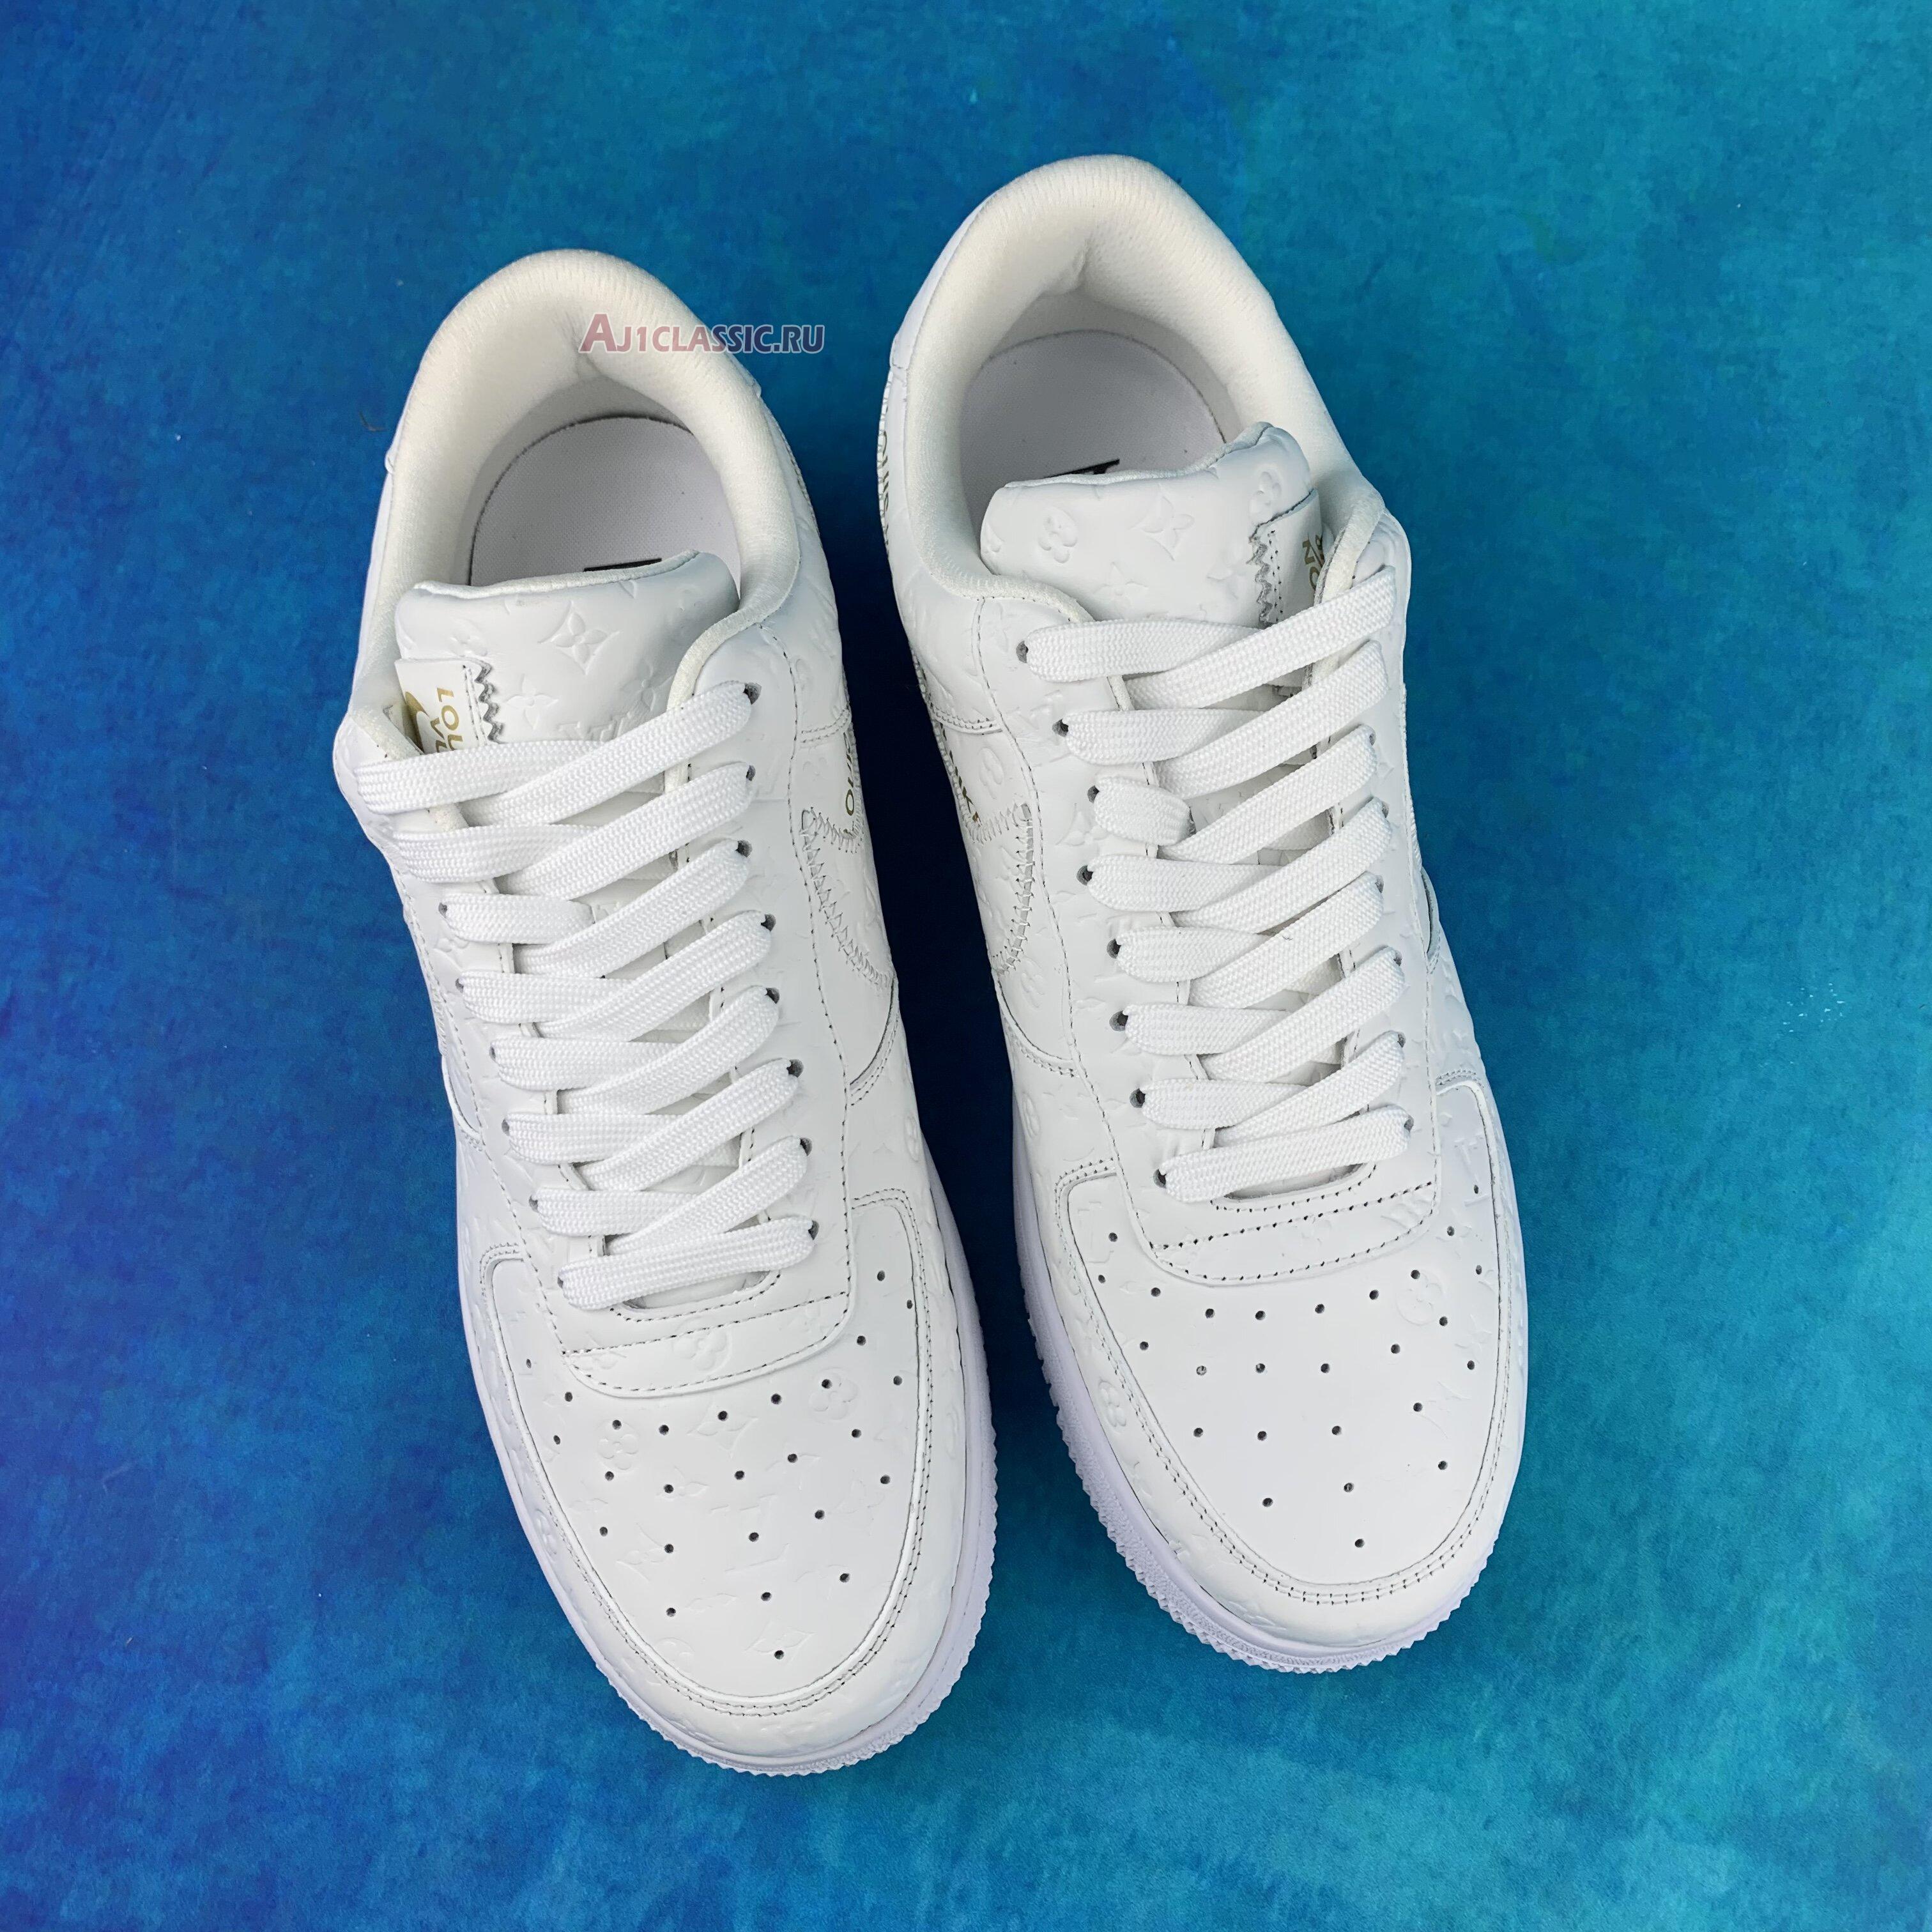 Louis Vuitton x Nike Air Force 1 Low Triple White 1A9V WHITE LOW White/White/White Sneakers